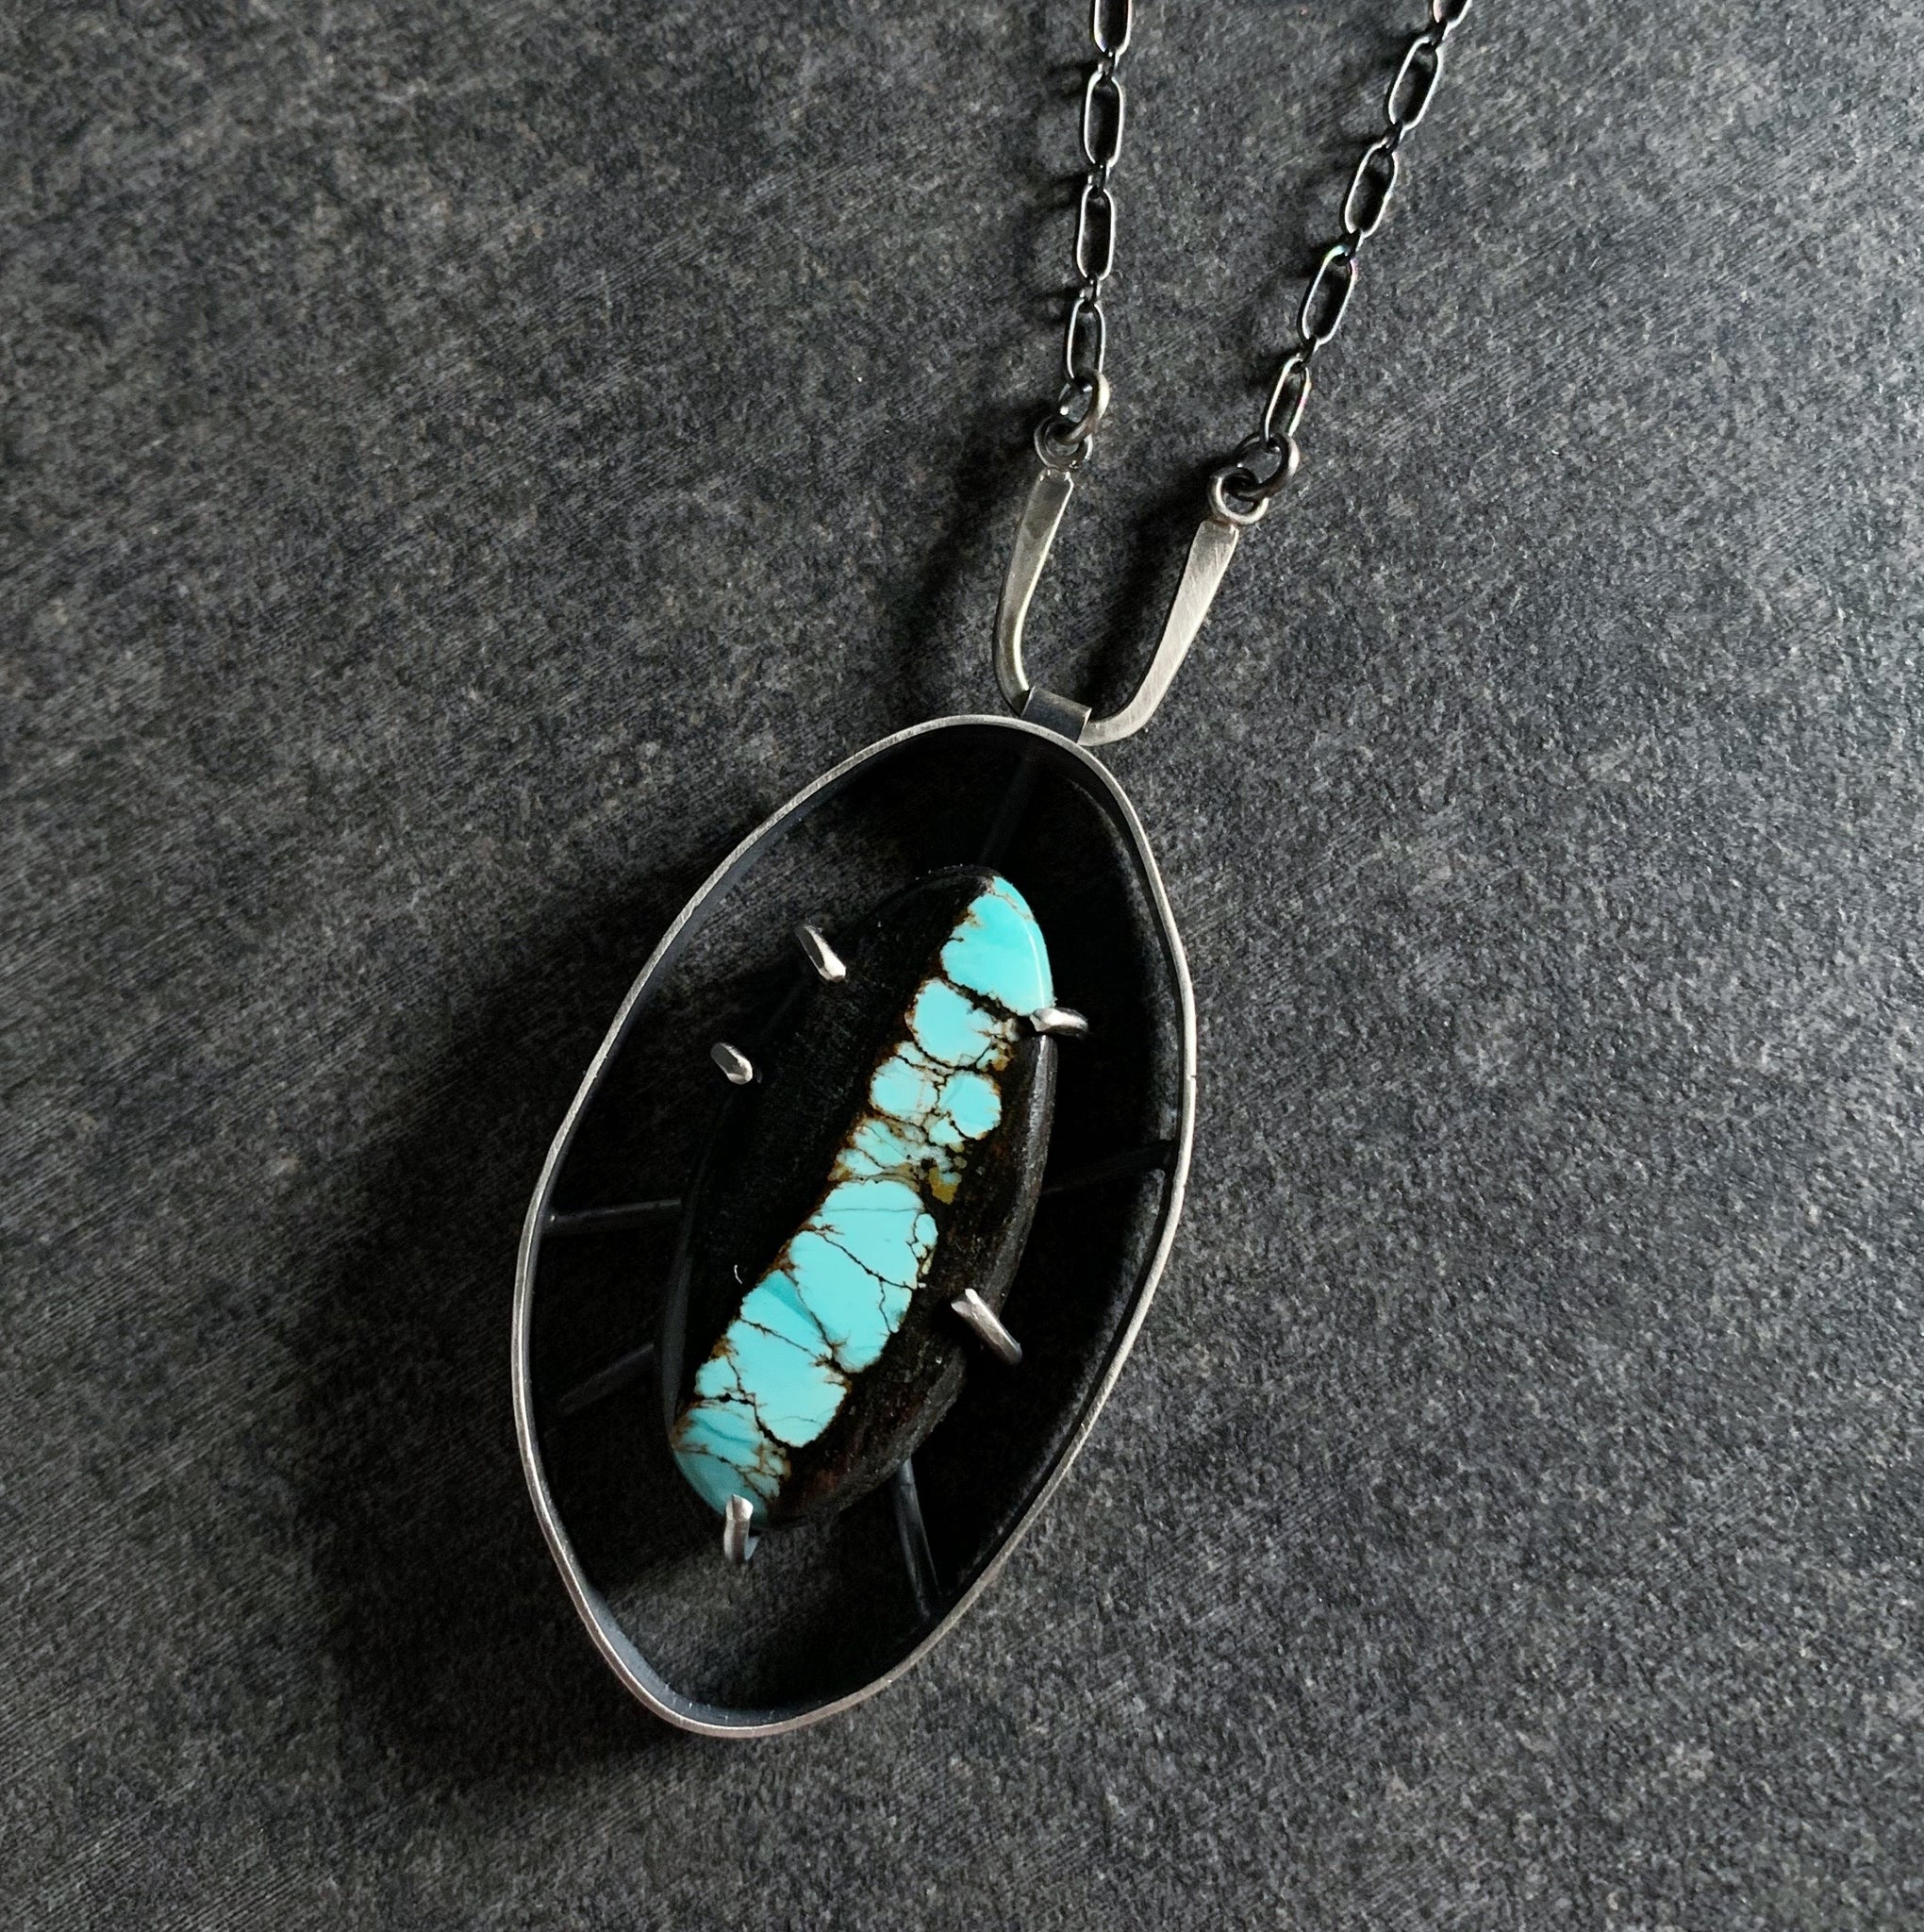 Wayfinder Necklace no. 5- Bao Canyon Turquoise